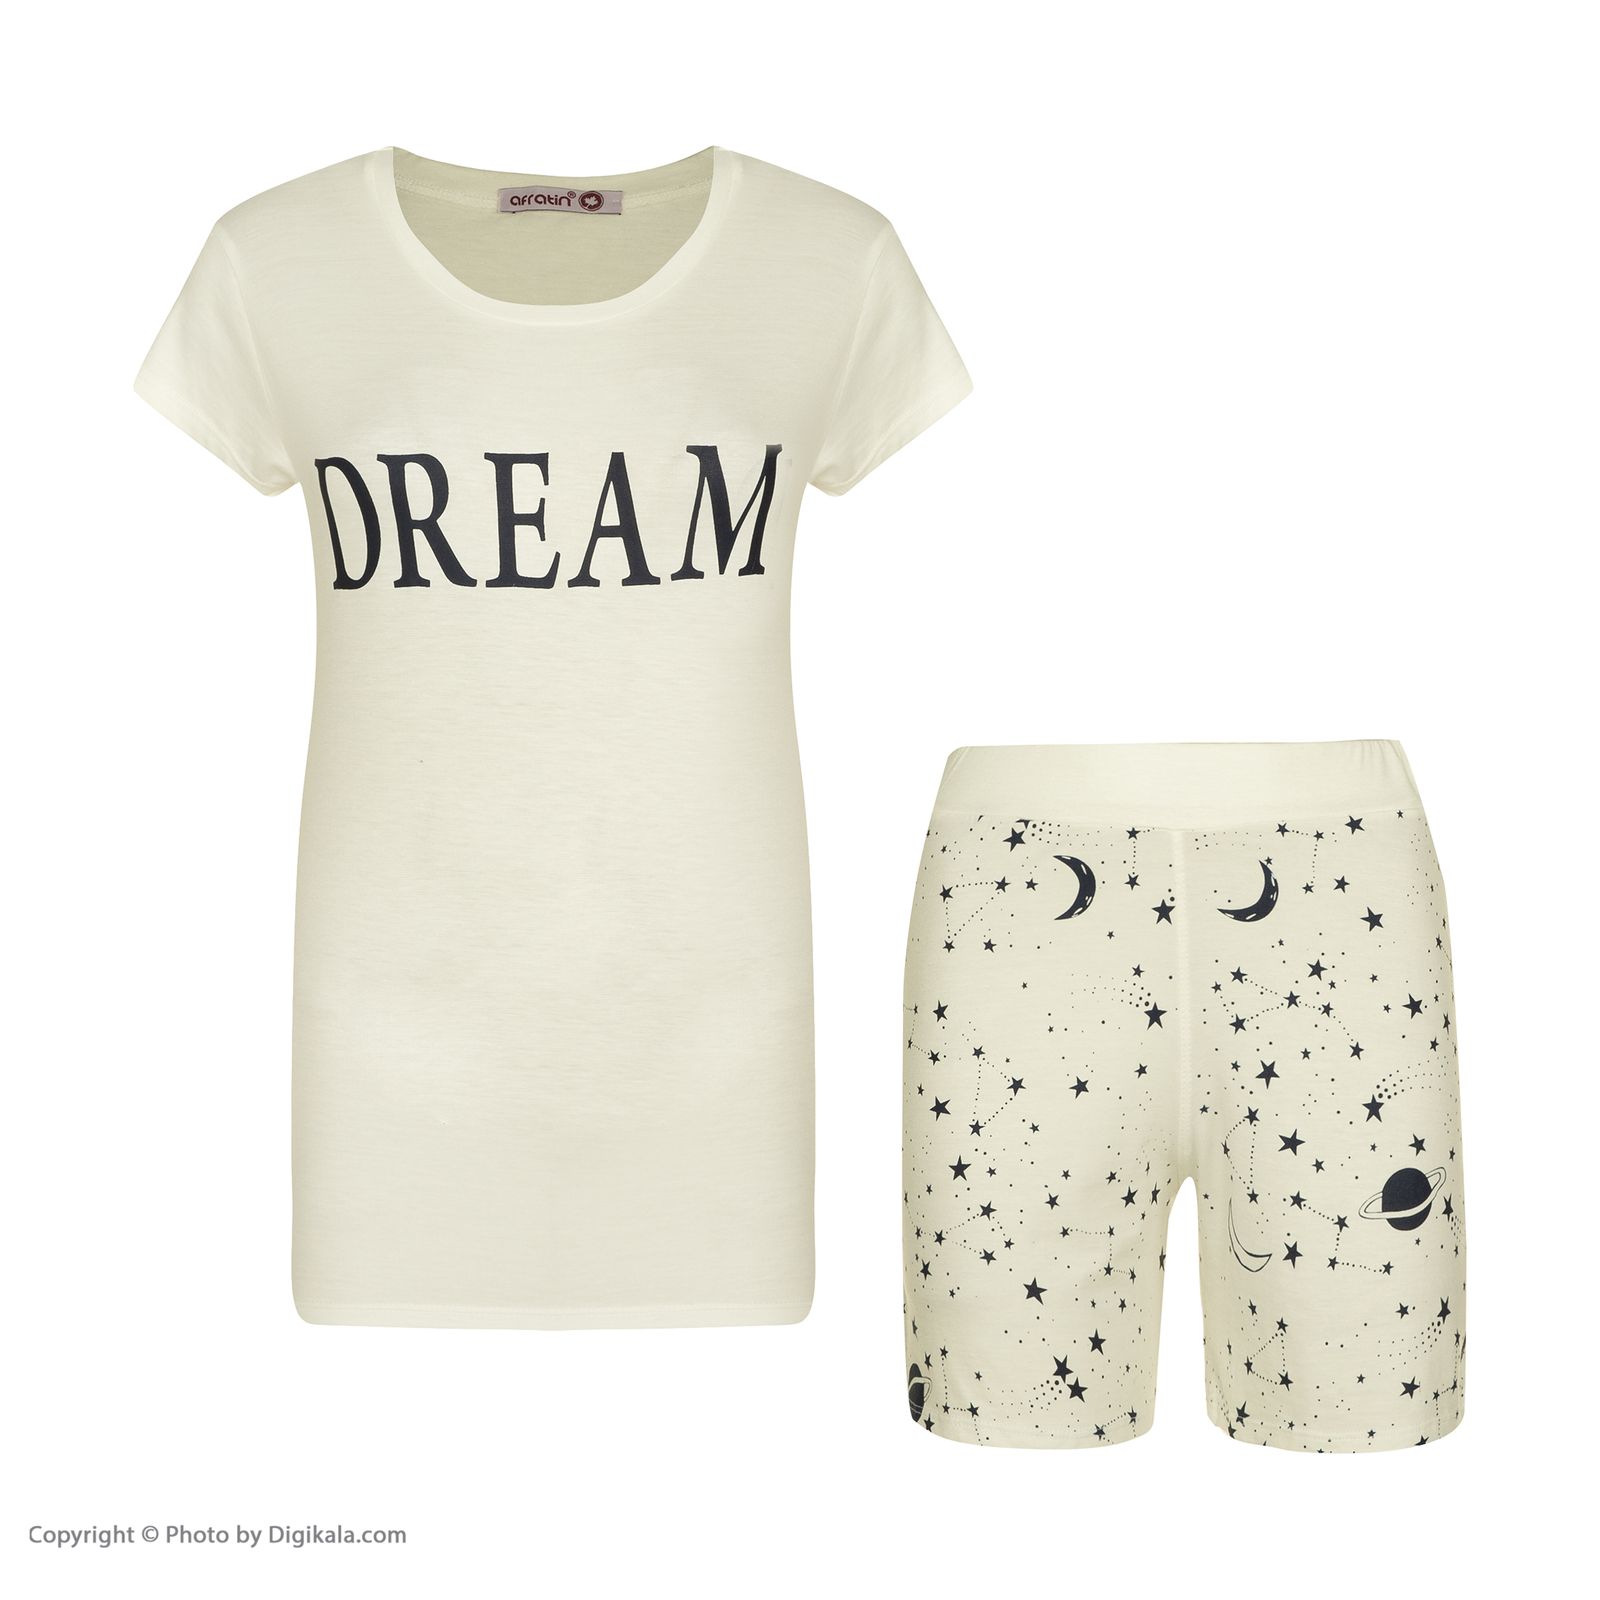 ست تی شرت و شلوارک زنانه افراتین مدل Dream کد 6558 رنگ شیری -  - 2